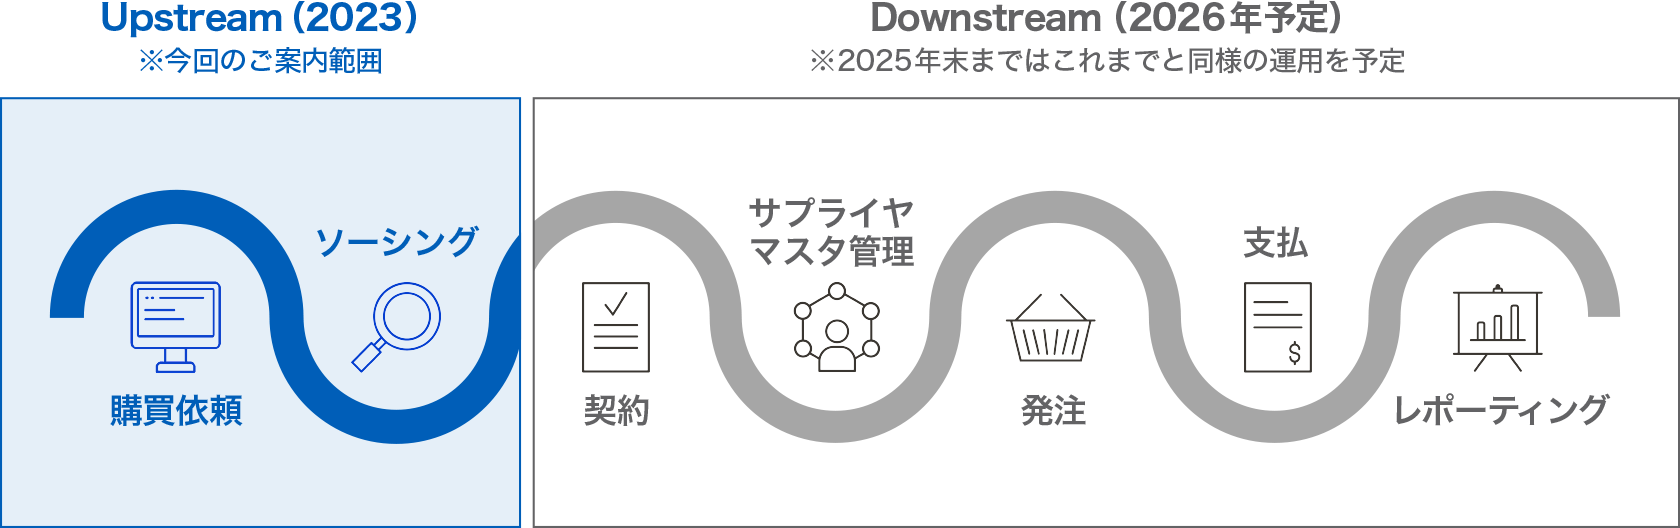 Upstream(2023) ※今回のご案内範囲　購買依頼、ソーシング　Downstream (2026年予定) ※2025年末まではこれまでと同様の運用を予定　契約、サプライヤマスタ管理、発注、支払、レポーティング